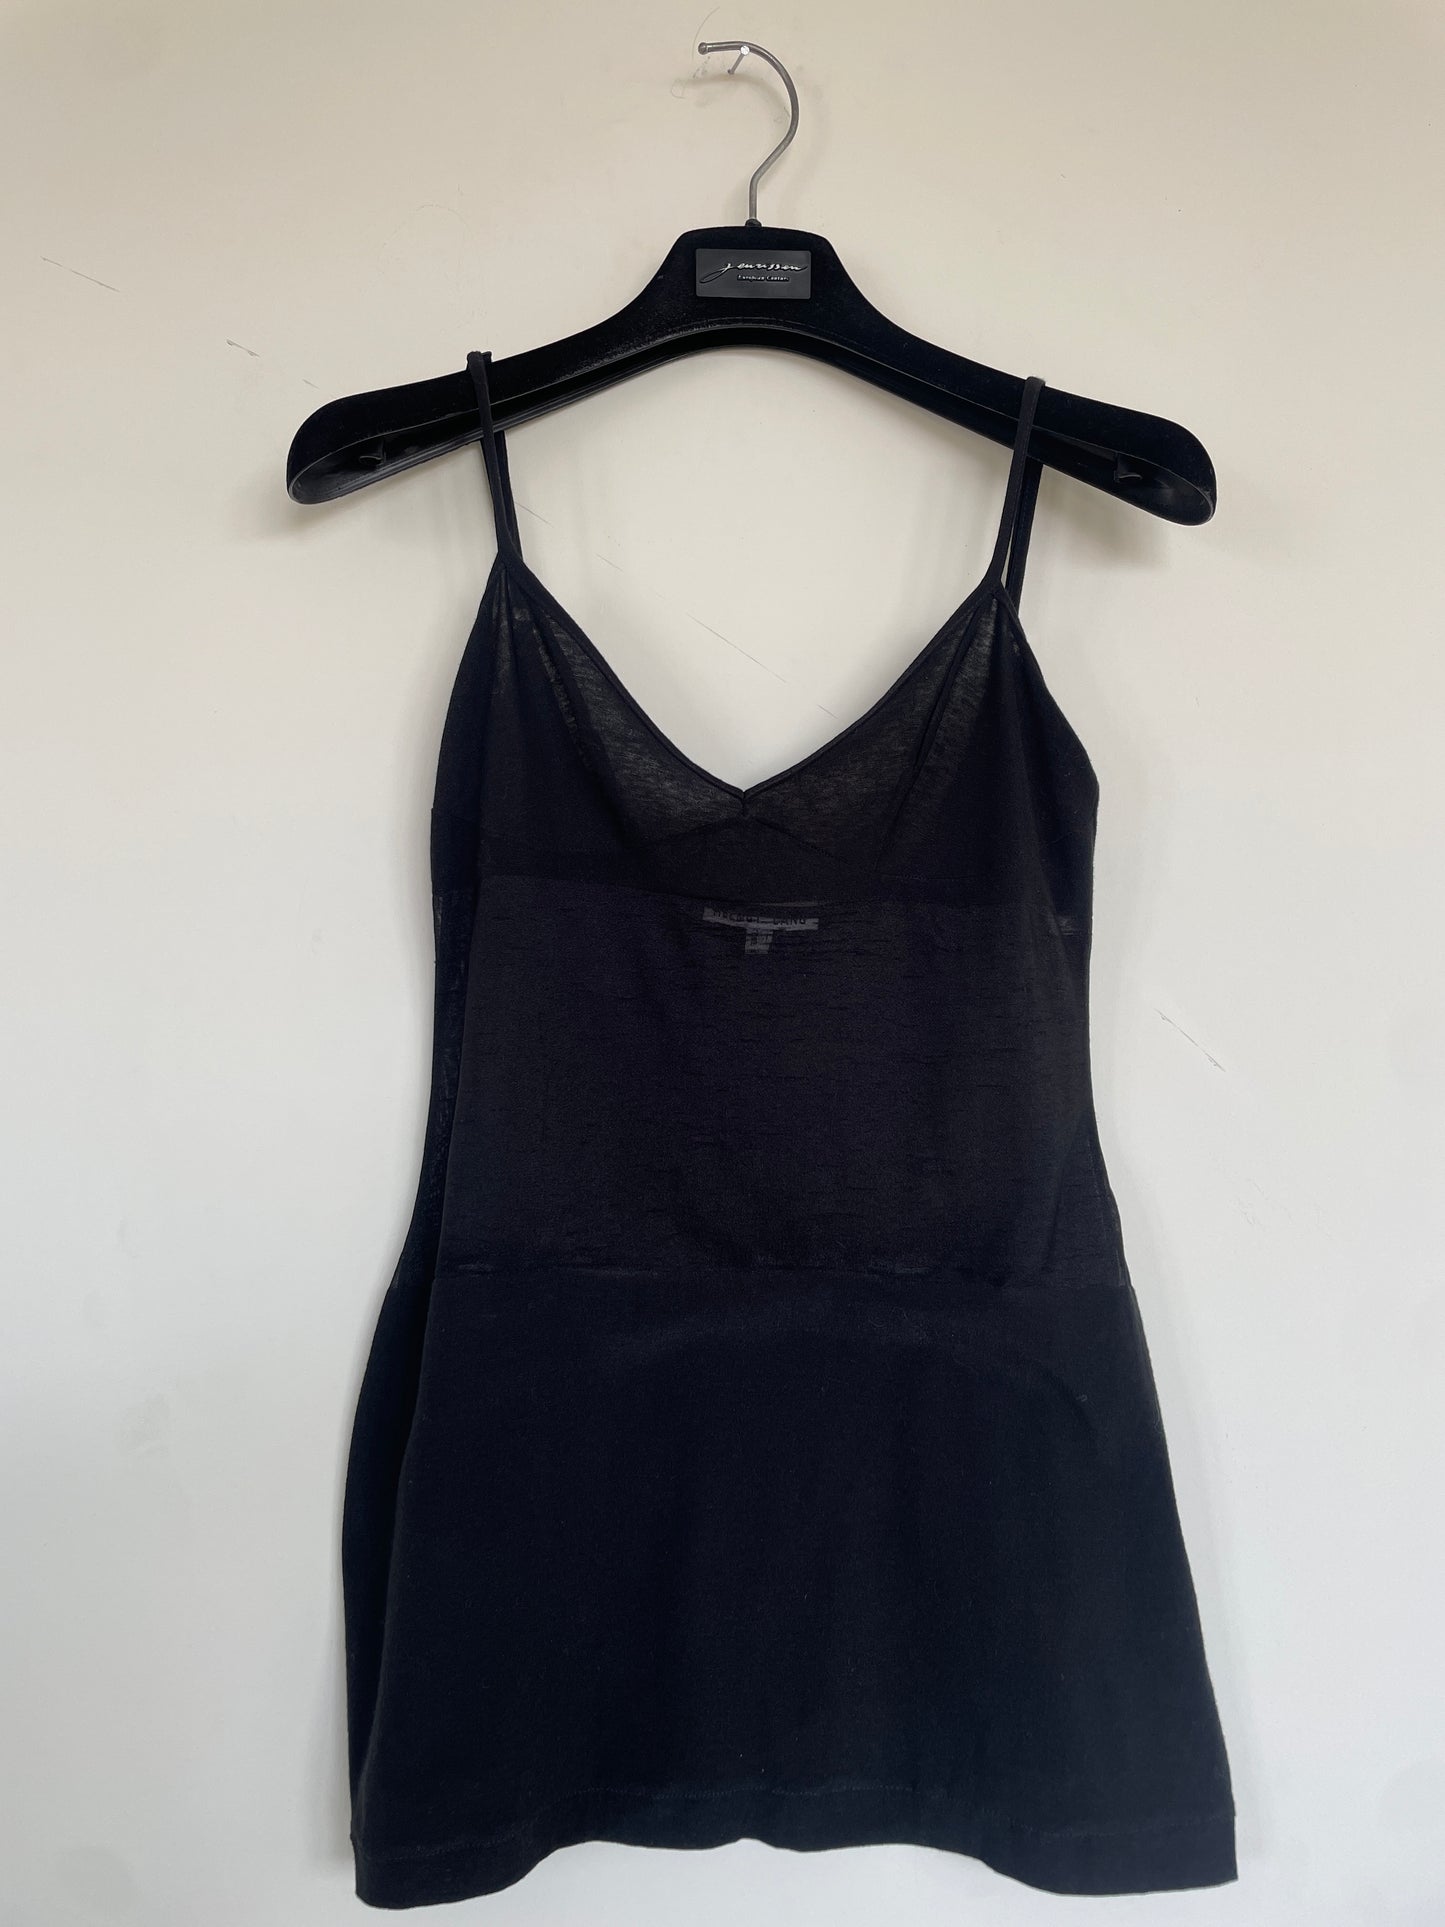 Helmut Lang 90's black sheer cotton top with shoulder straps